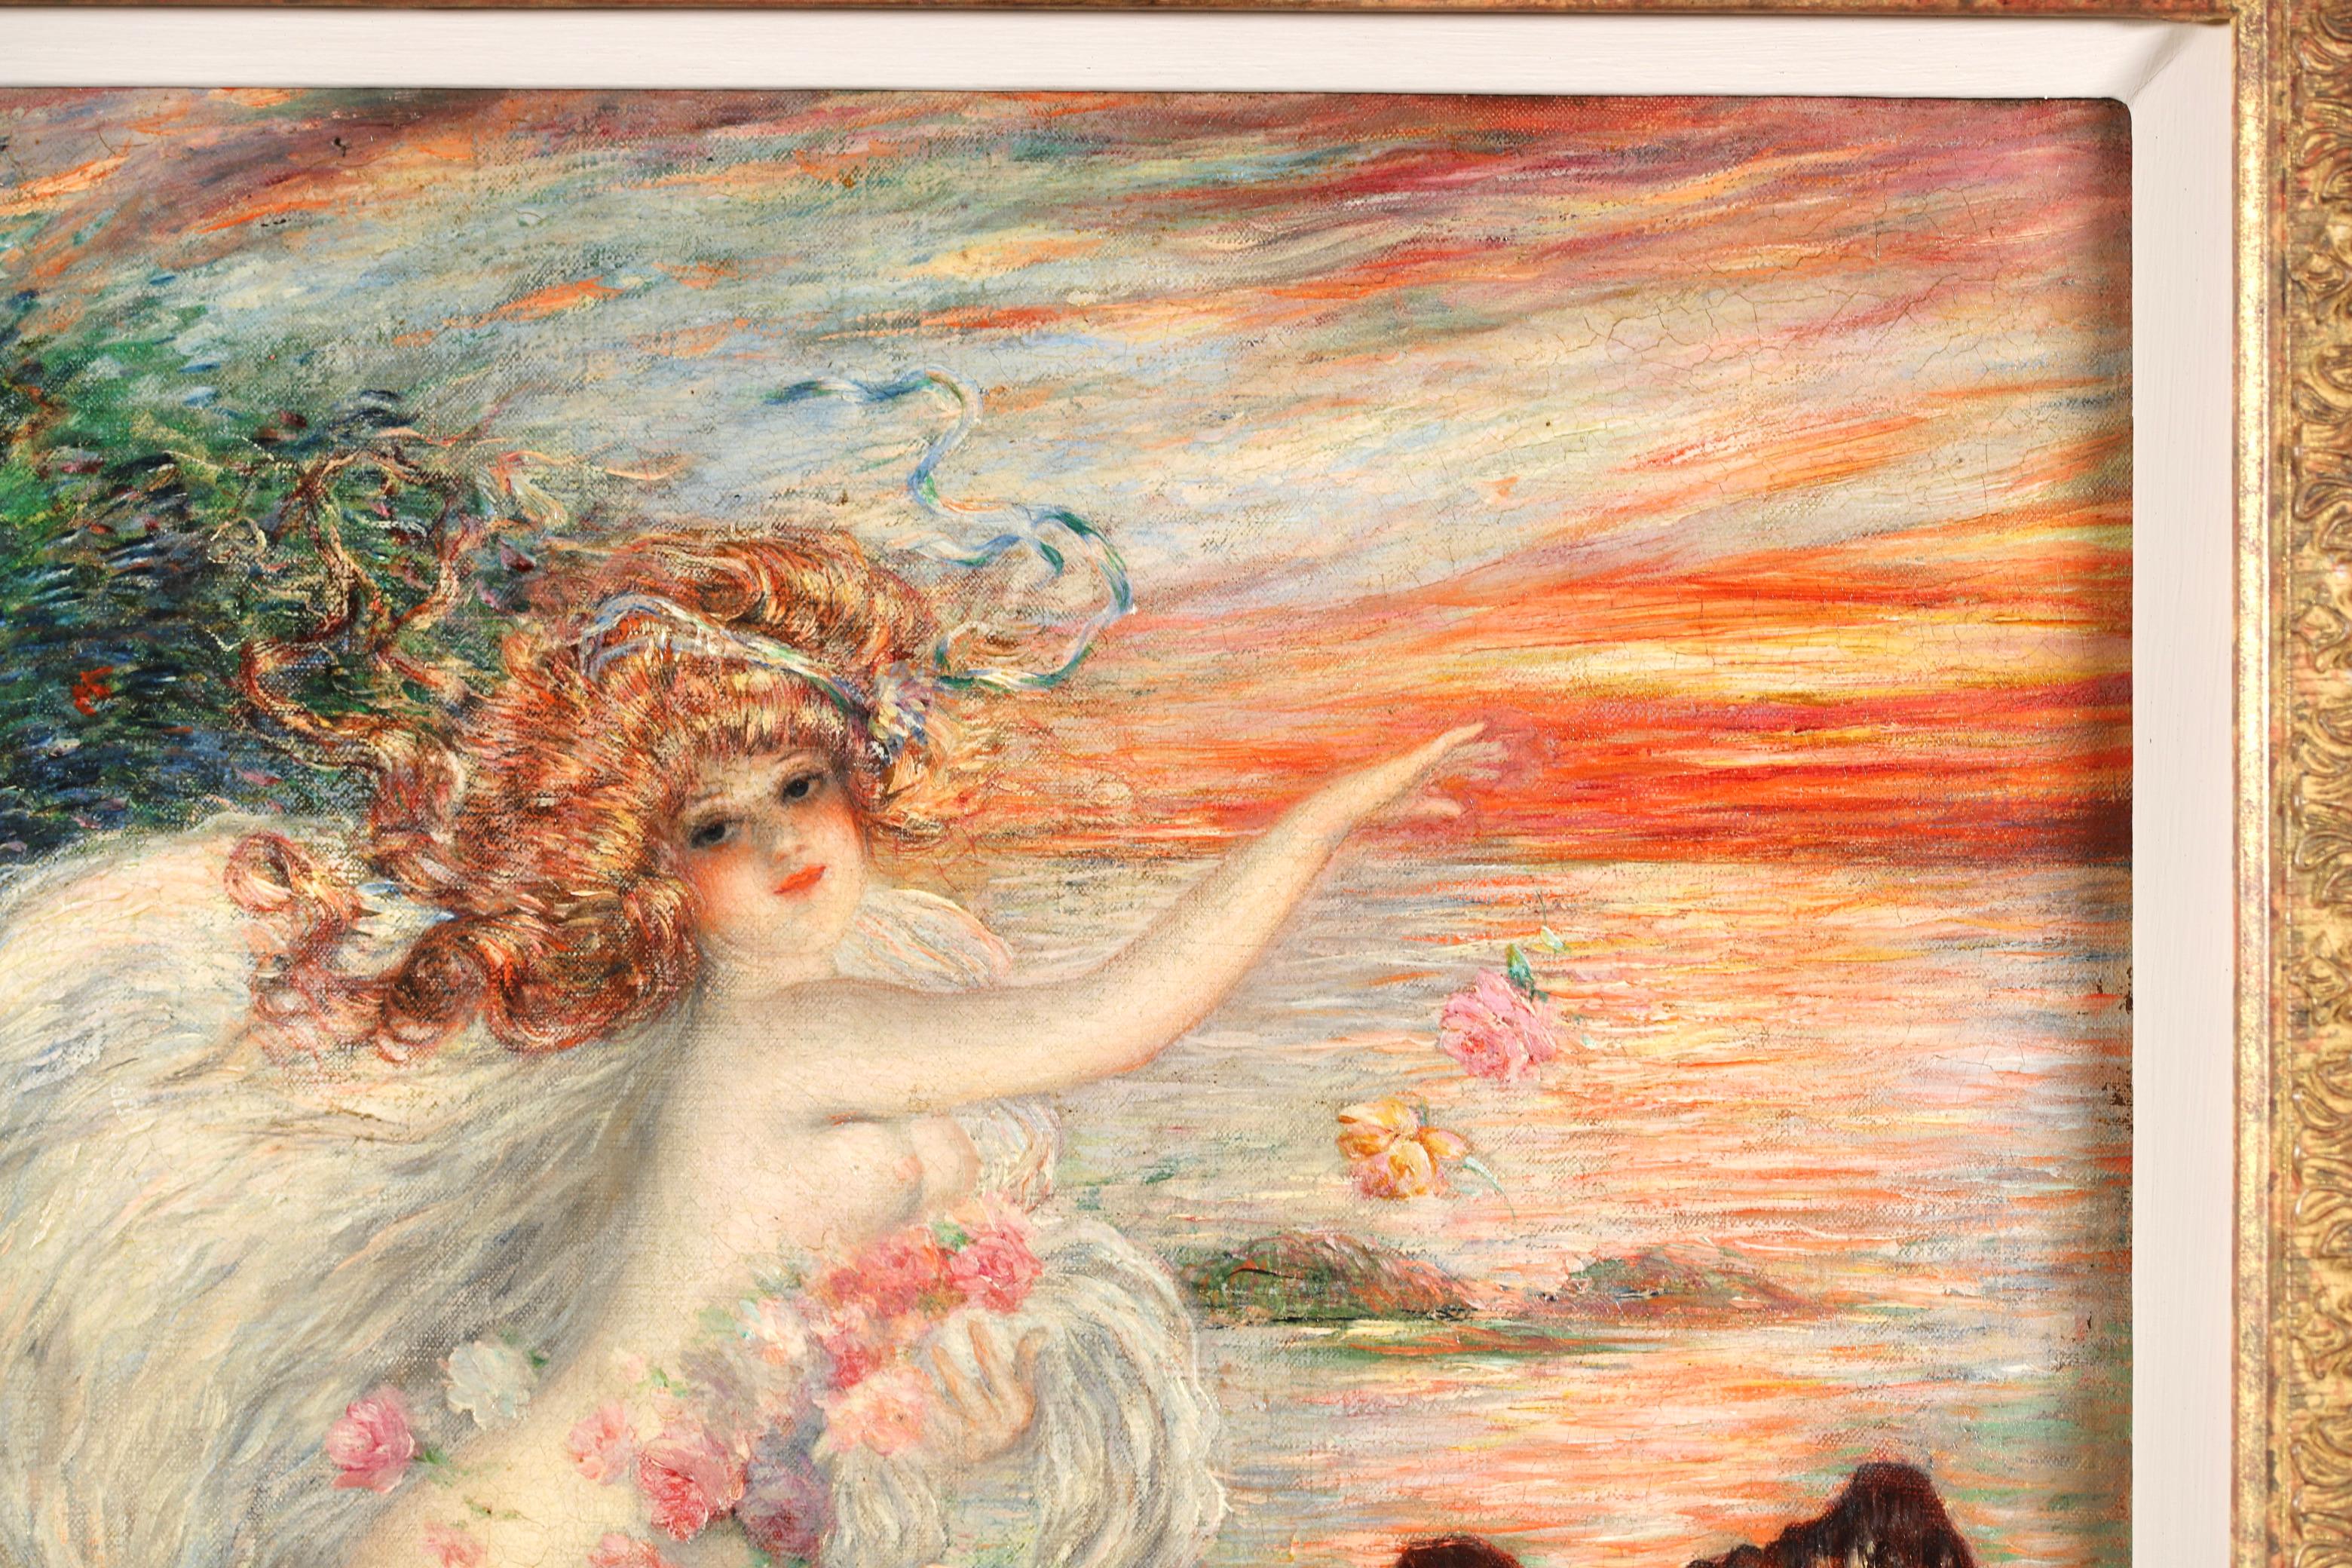 Signierte impressionistische Figur in Landschaft Öl auf Leinwand um 1895 von französischem Maler, Illustrator und Karikaturist Abel Faivre. Das Werk zeigt eine Wassernymphe mit wallendem roten Haar, die Blumen in einen Fluss wirft. An ihrer Seite